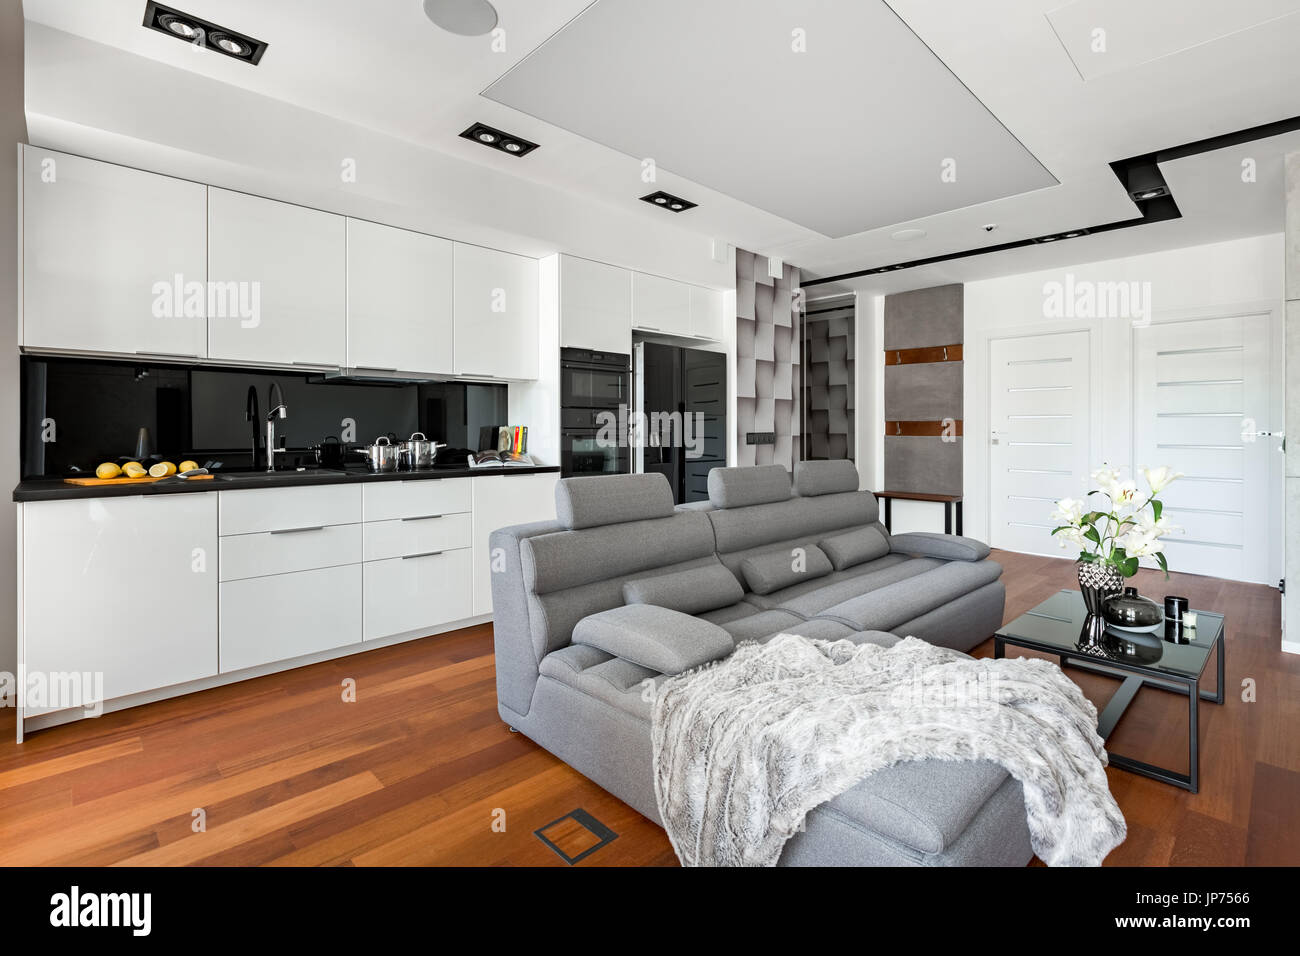 Offene Küche mit weißen Möbeln und extra großen grauen sofa Stockfoto